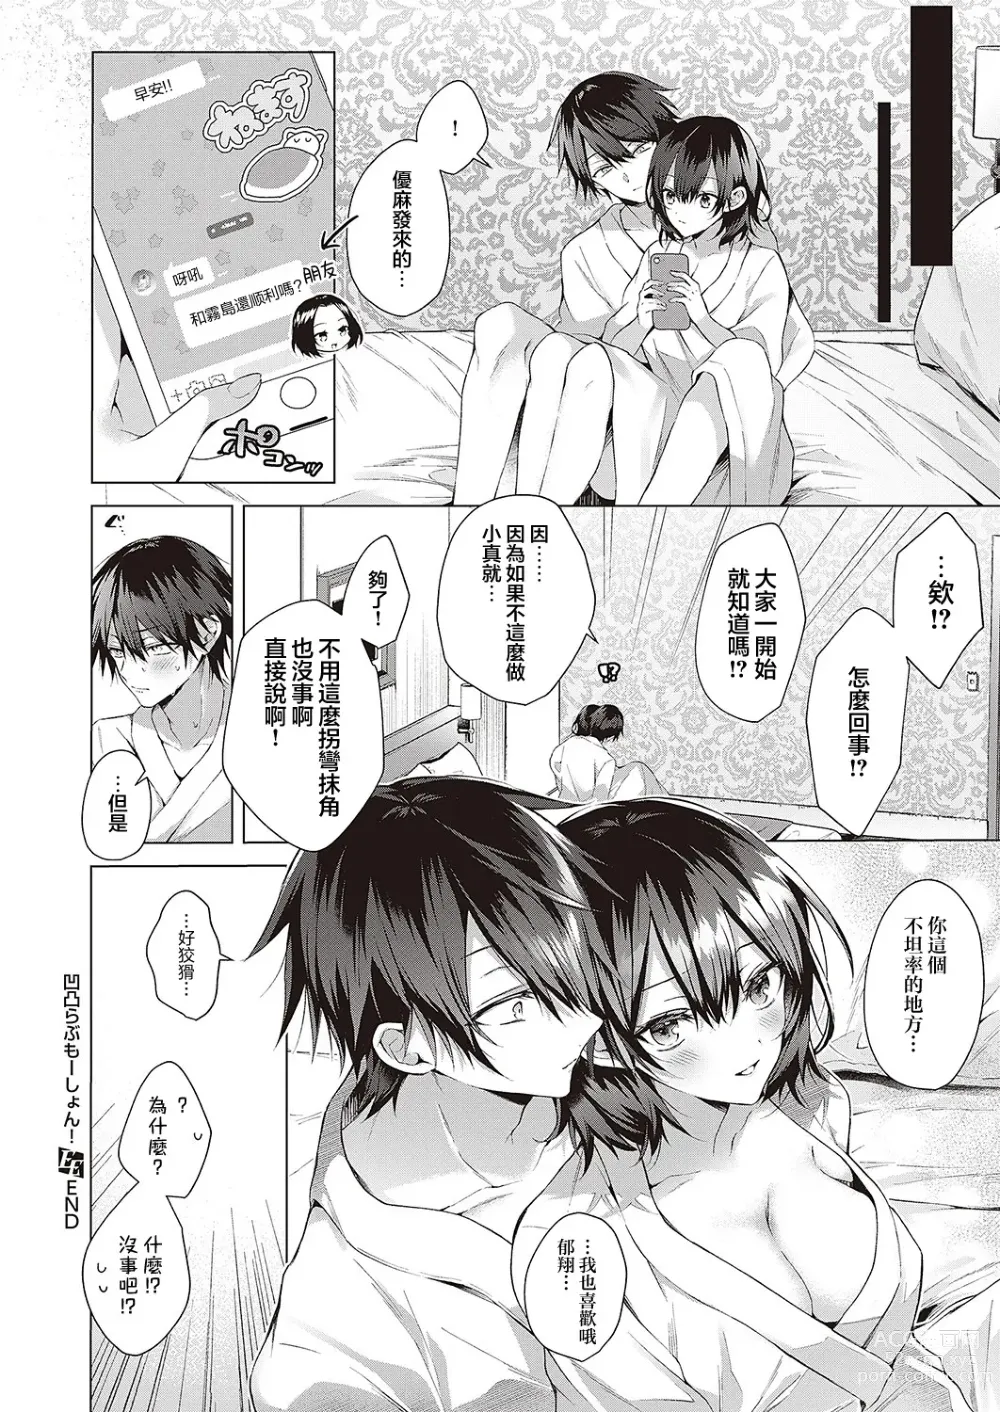 Page 32 of manga OUTOTSU Lovemotion!